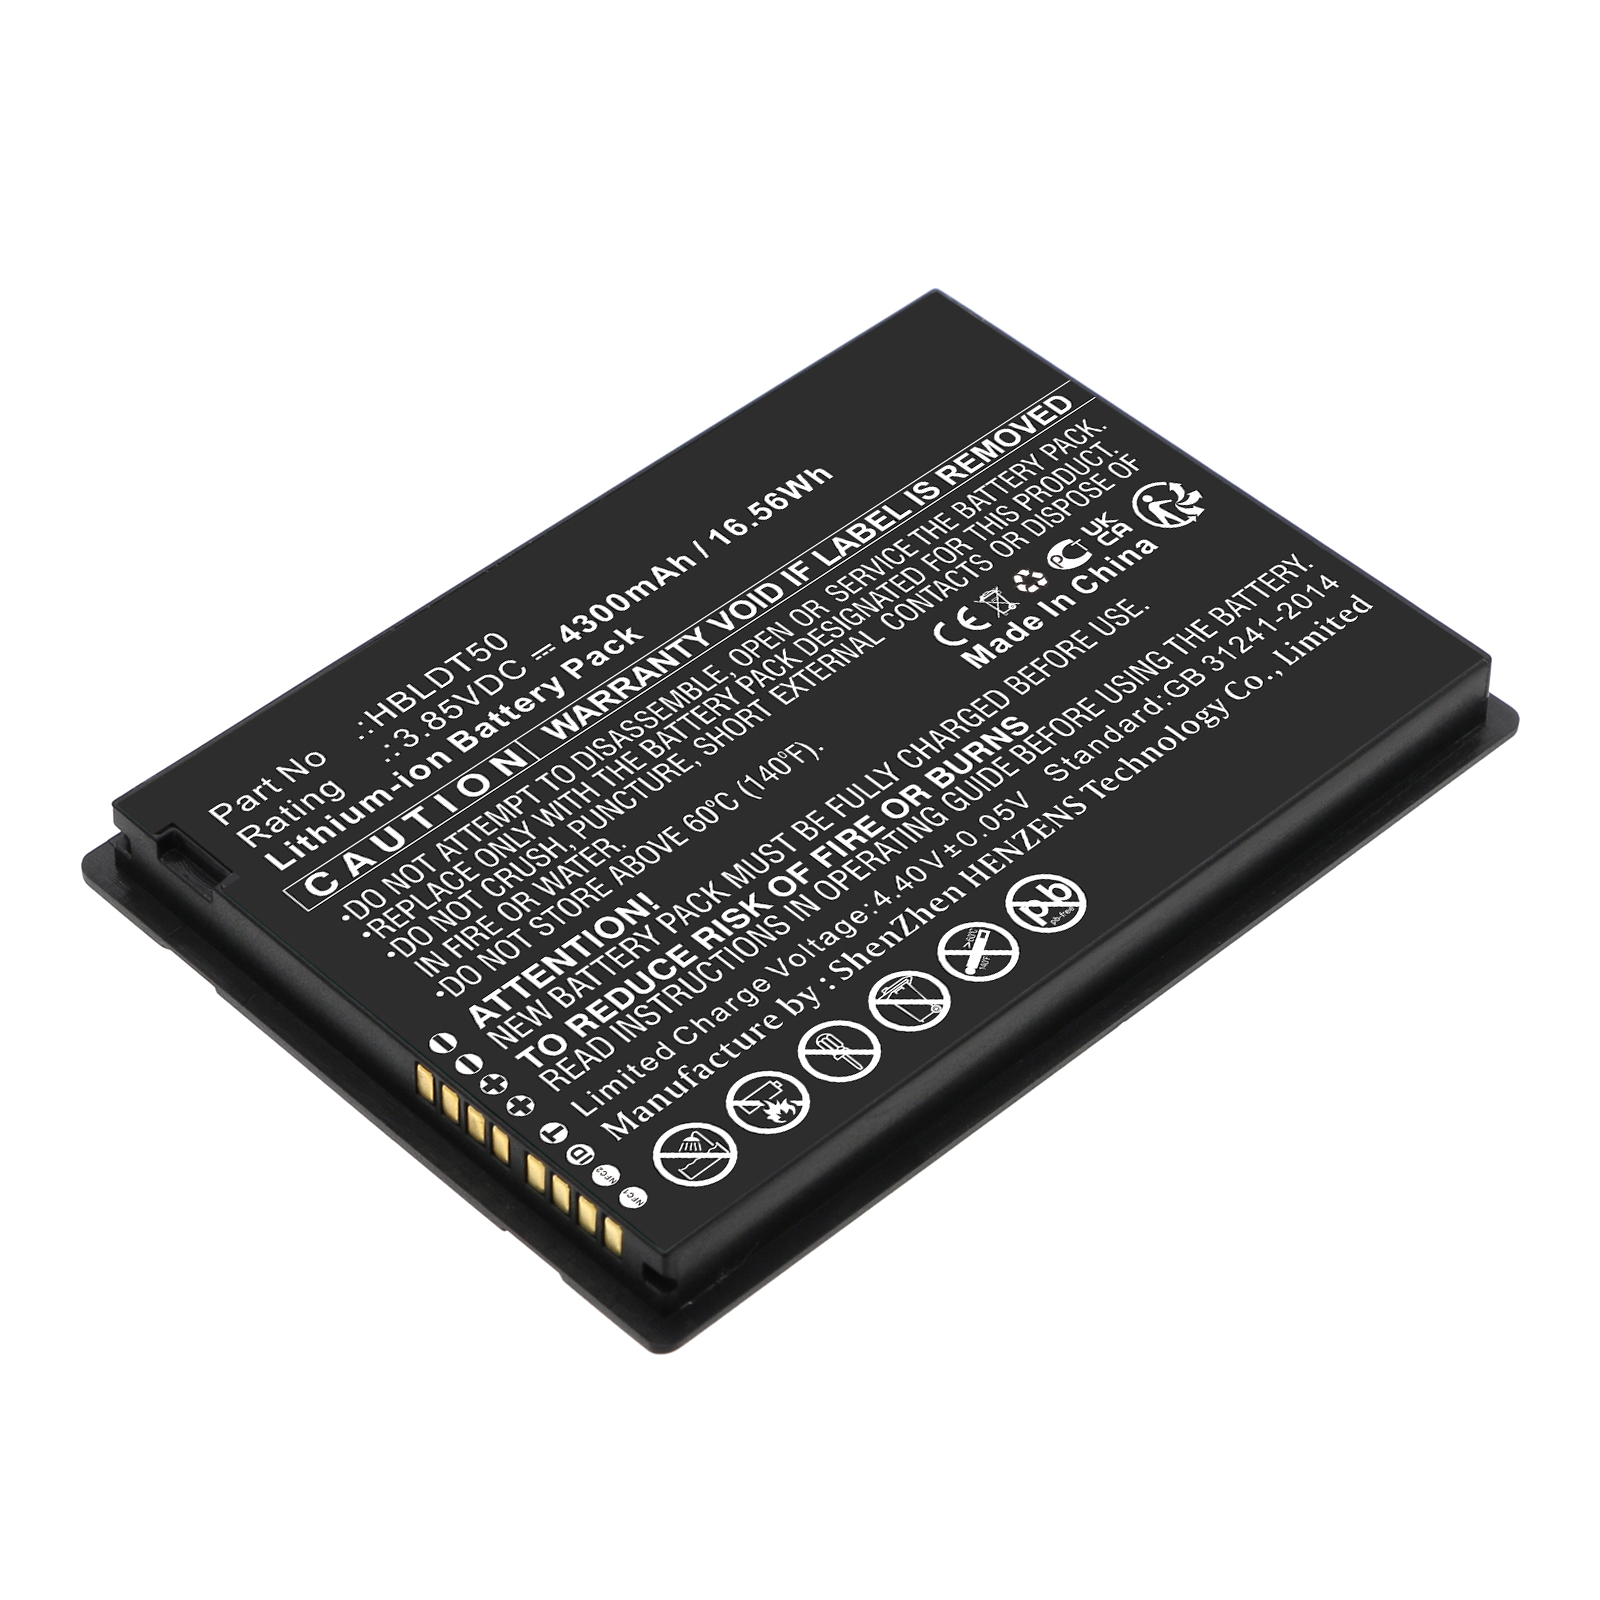 Synergy Digital Barcode Scanner Battery, Compatible with Urovo HBLDT50 Barcode Scanner Battery (Li-ion, 3.85V, 4300mAh)